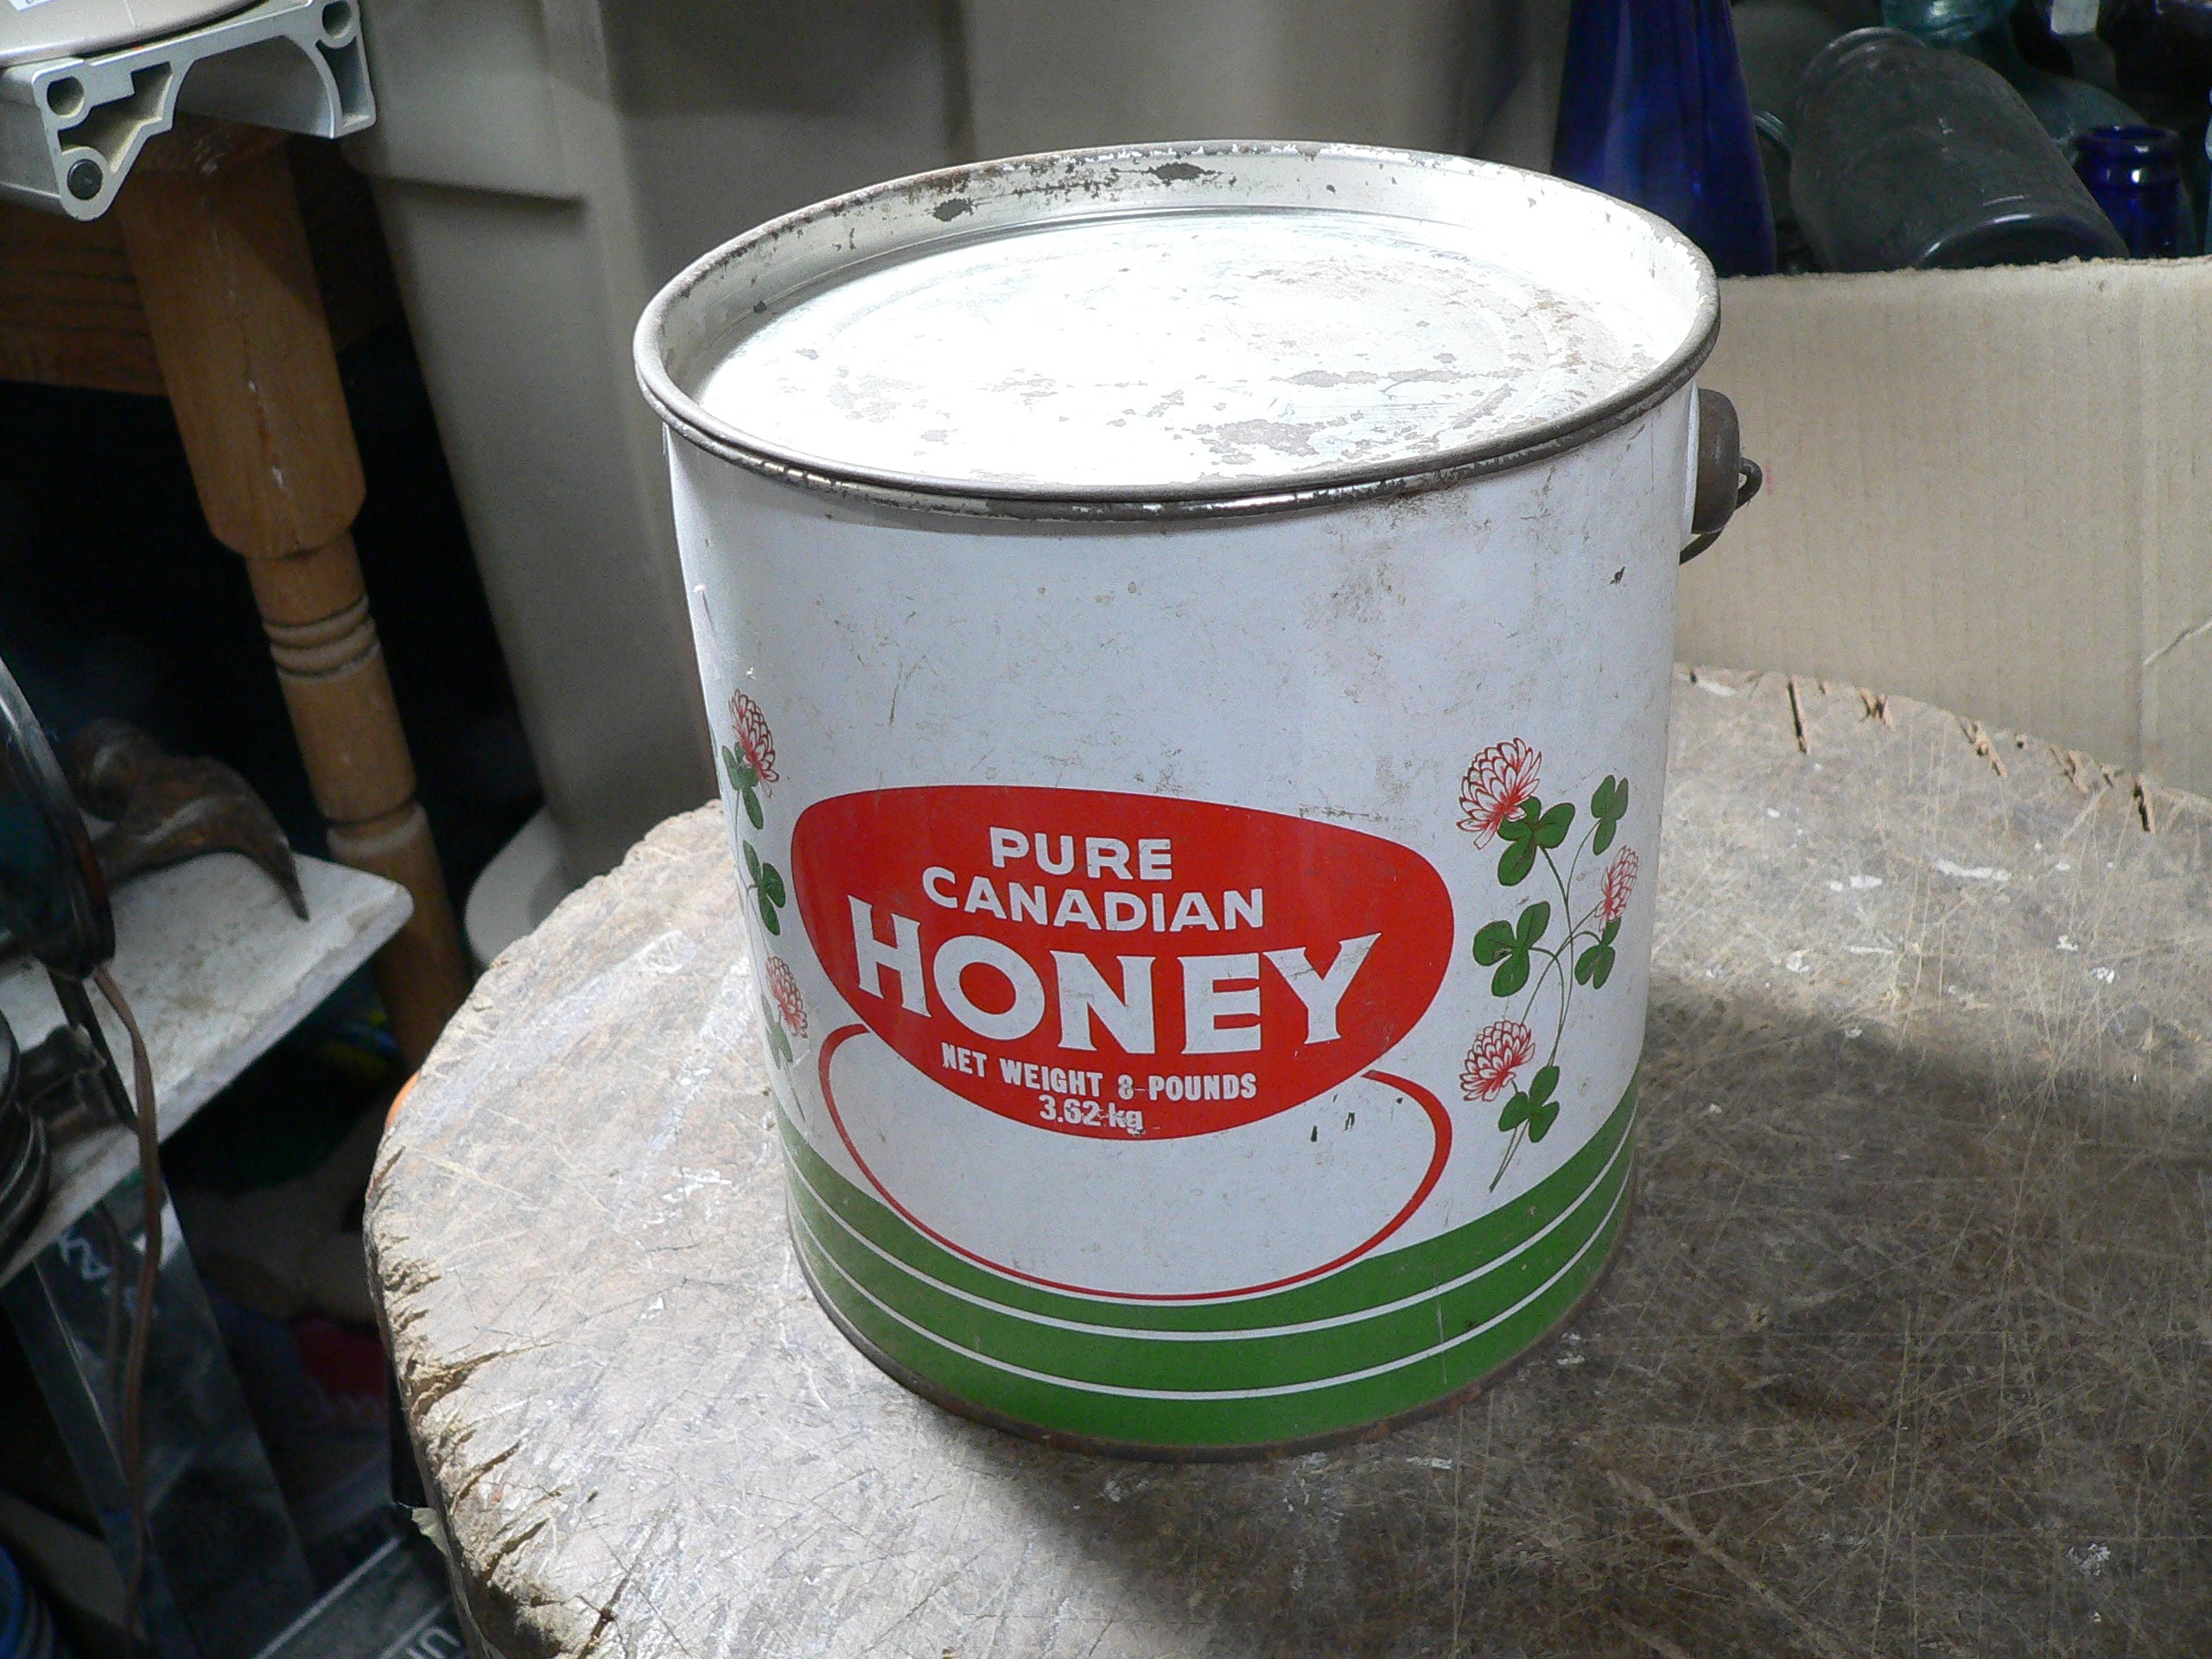 Chaudière de miel # 8673.19 